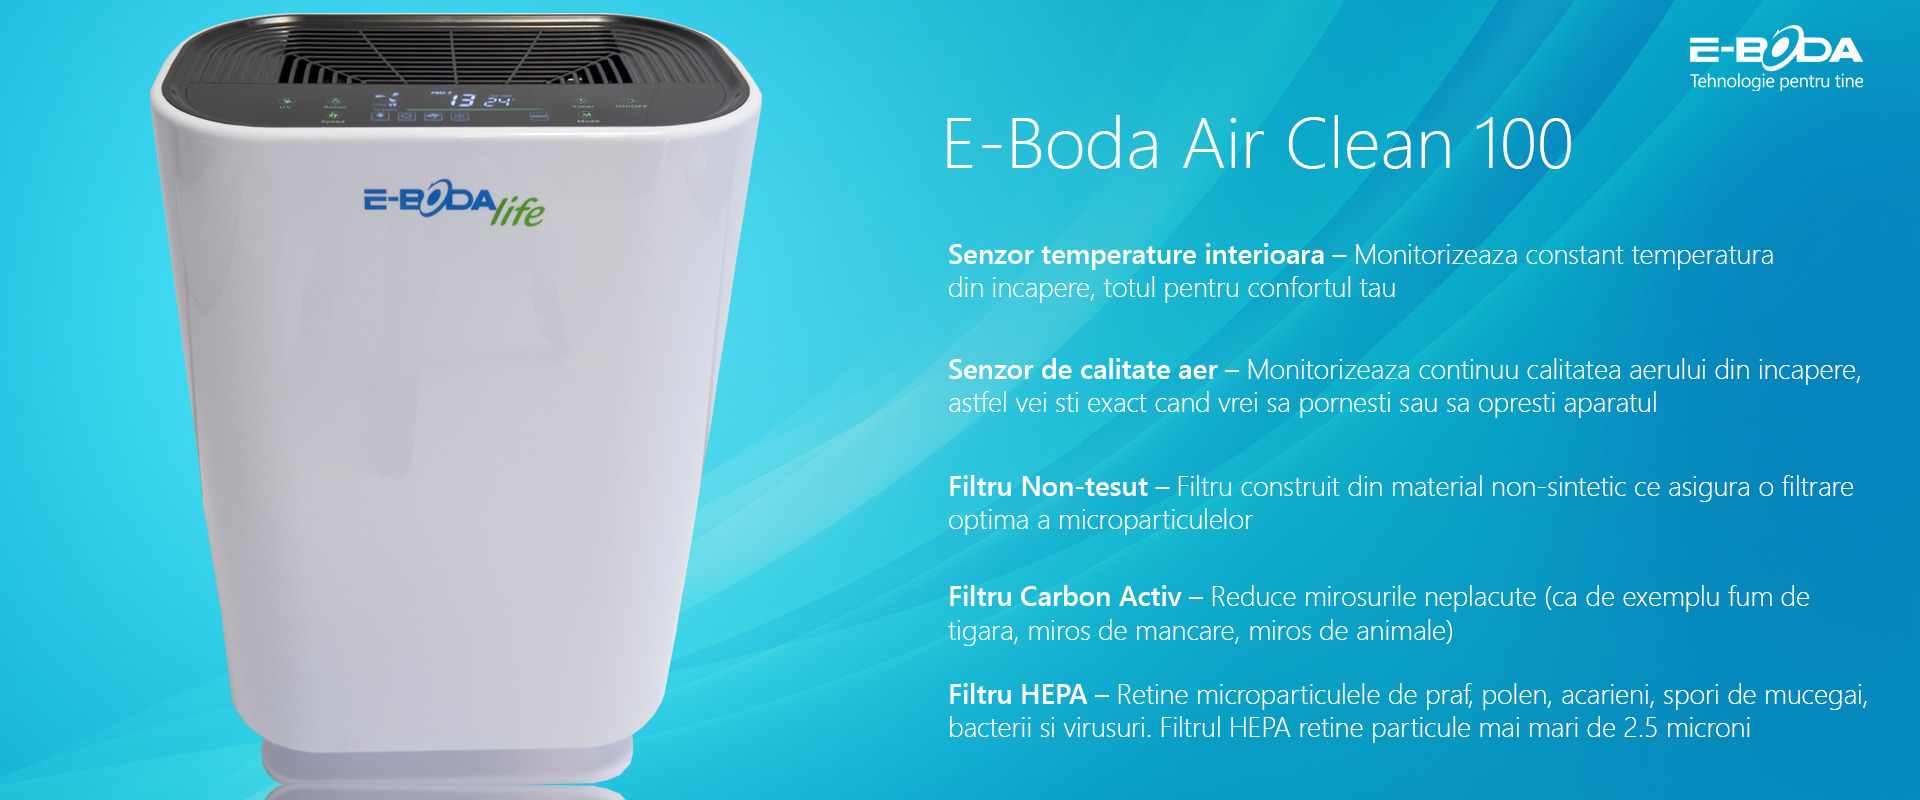 E-Boda Air Clean 100